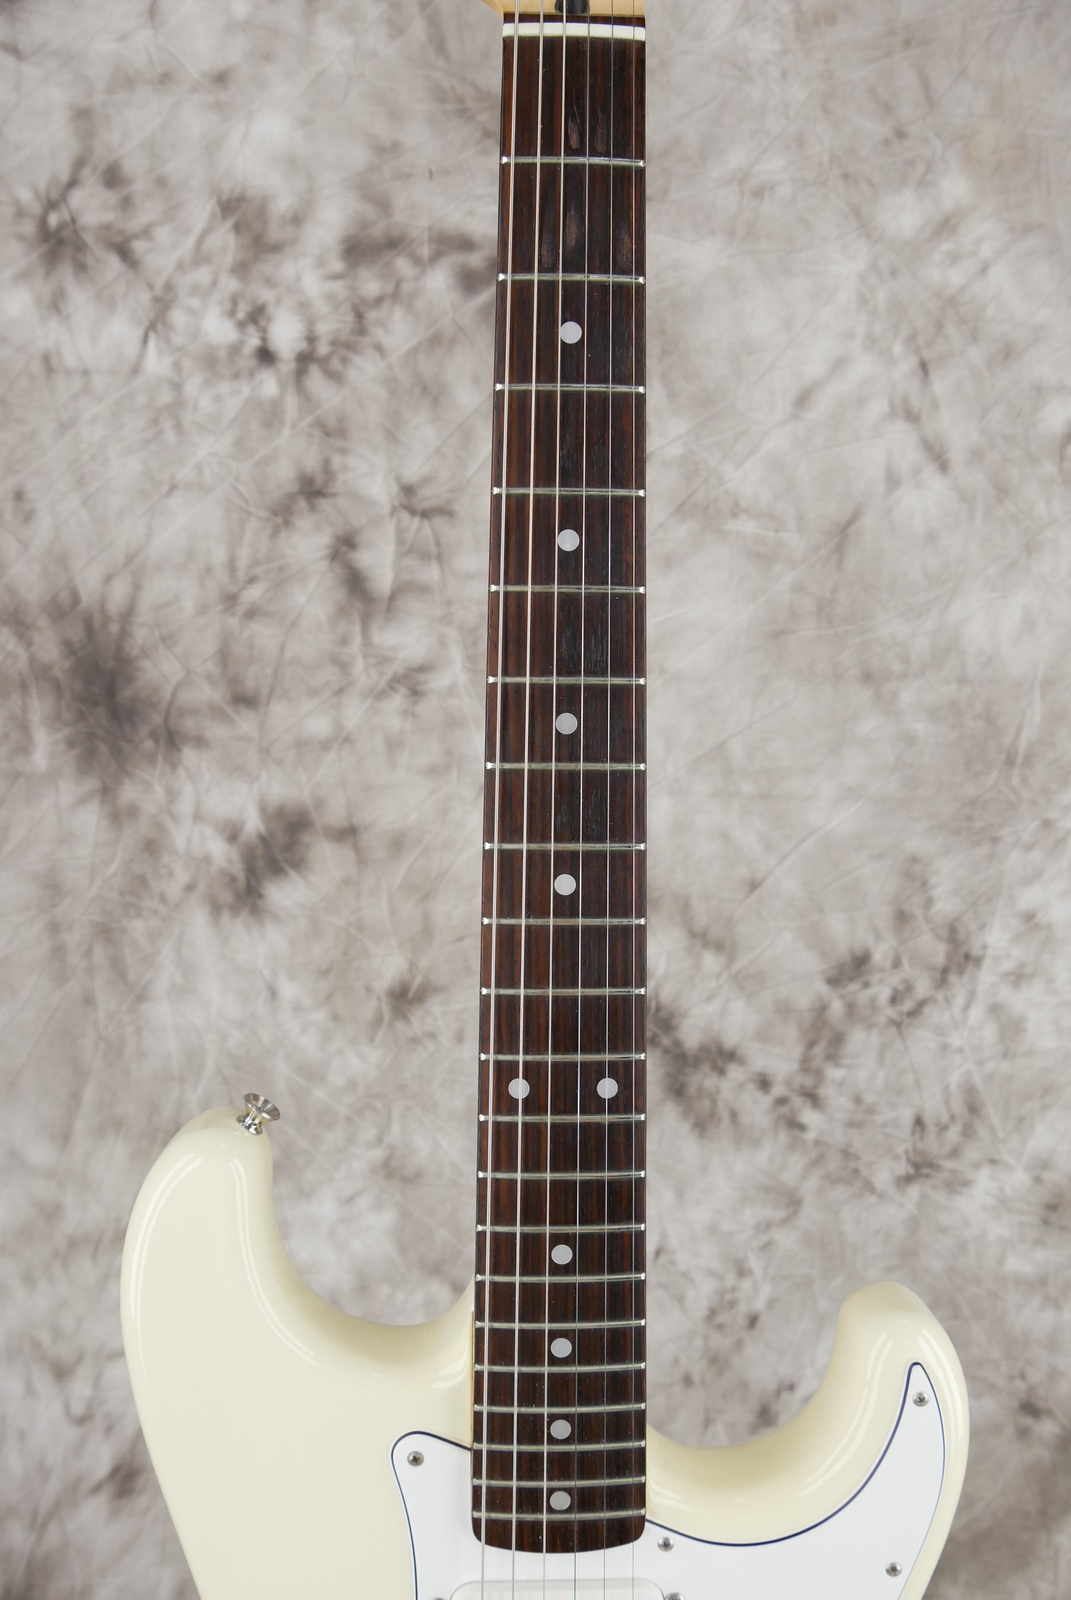 Fender_Stratocaster_Squier_series_Japan_olympic_white_1993-011.JPG